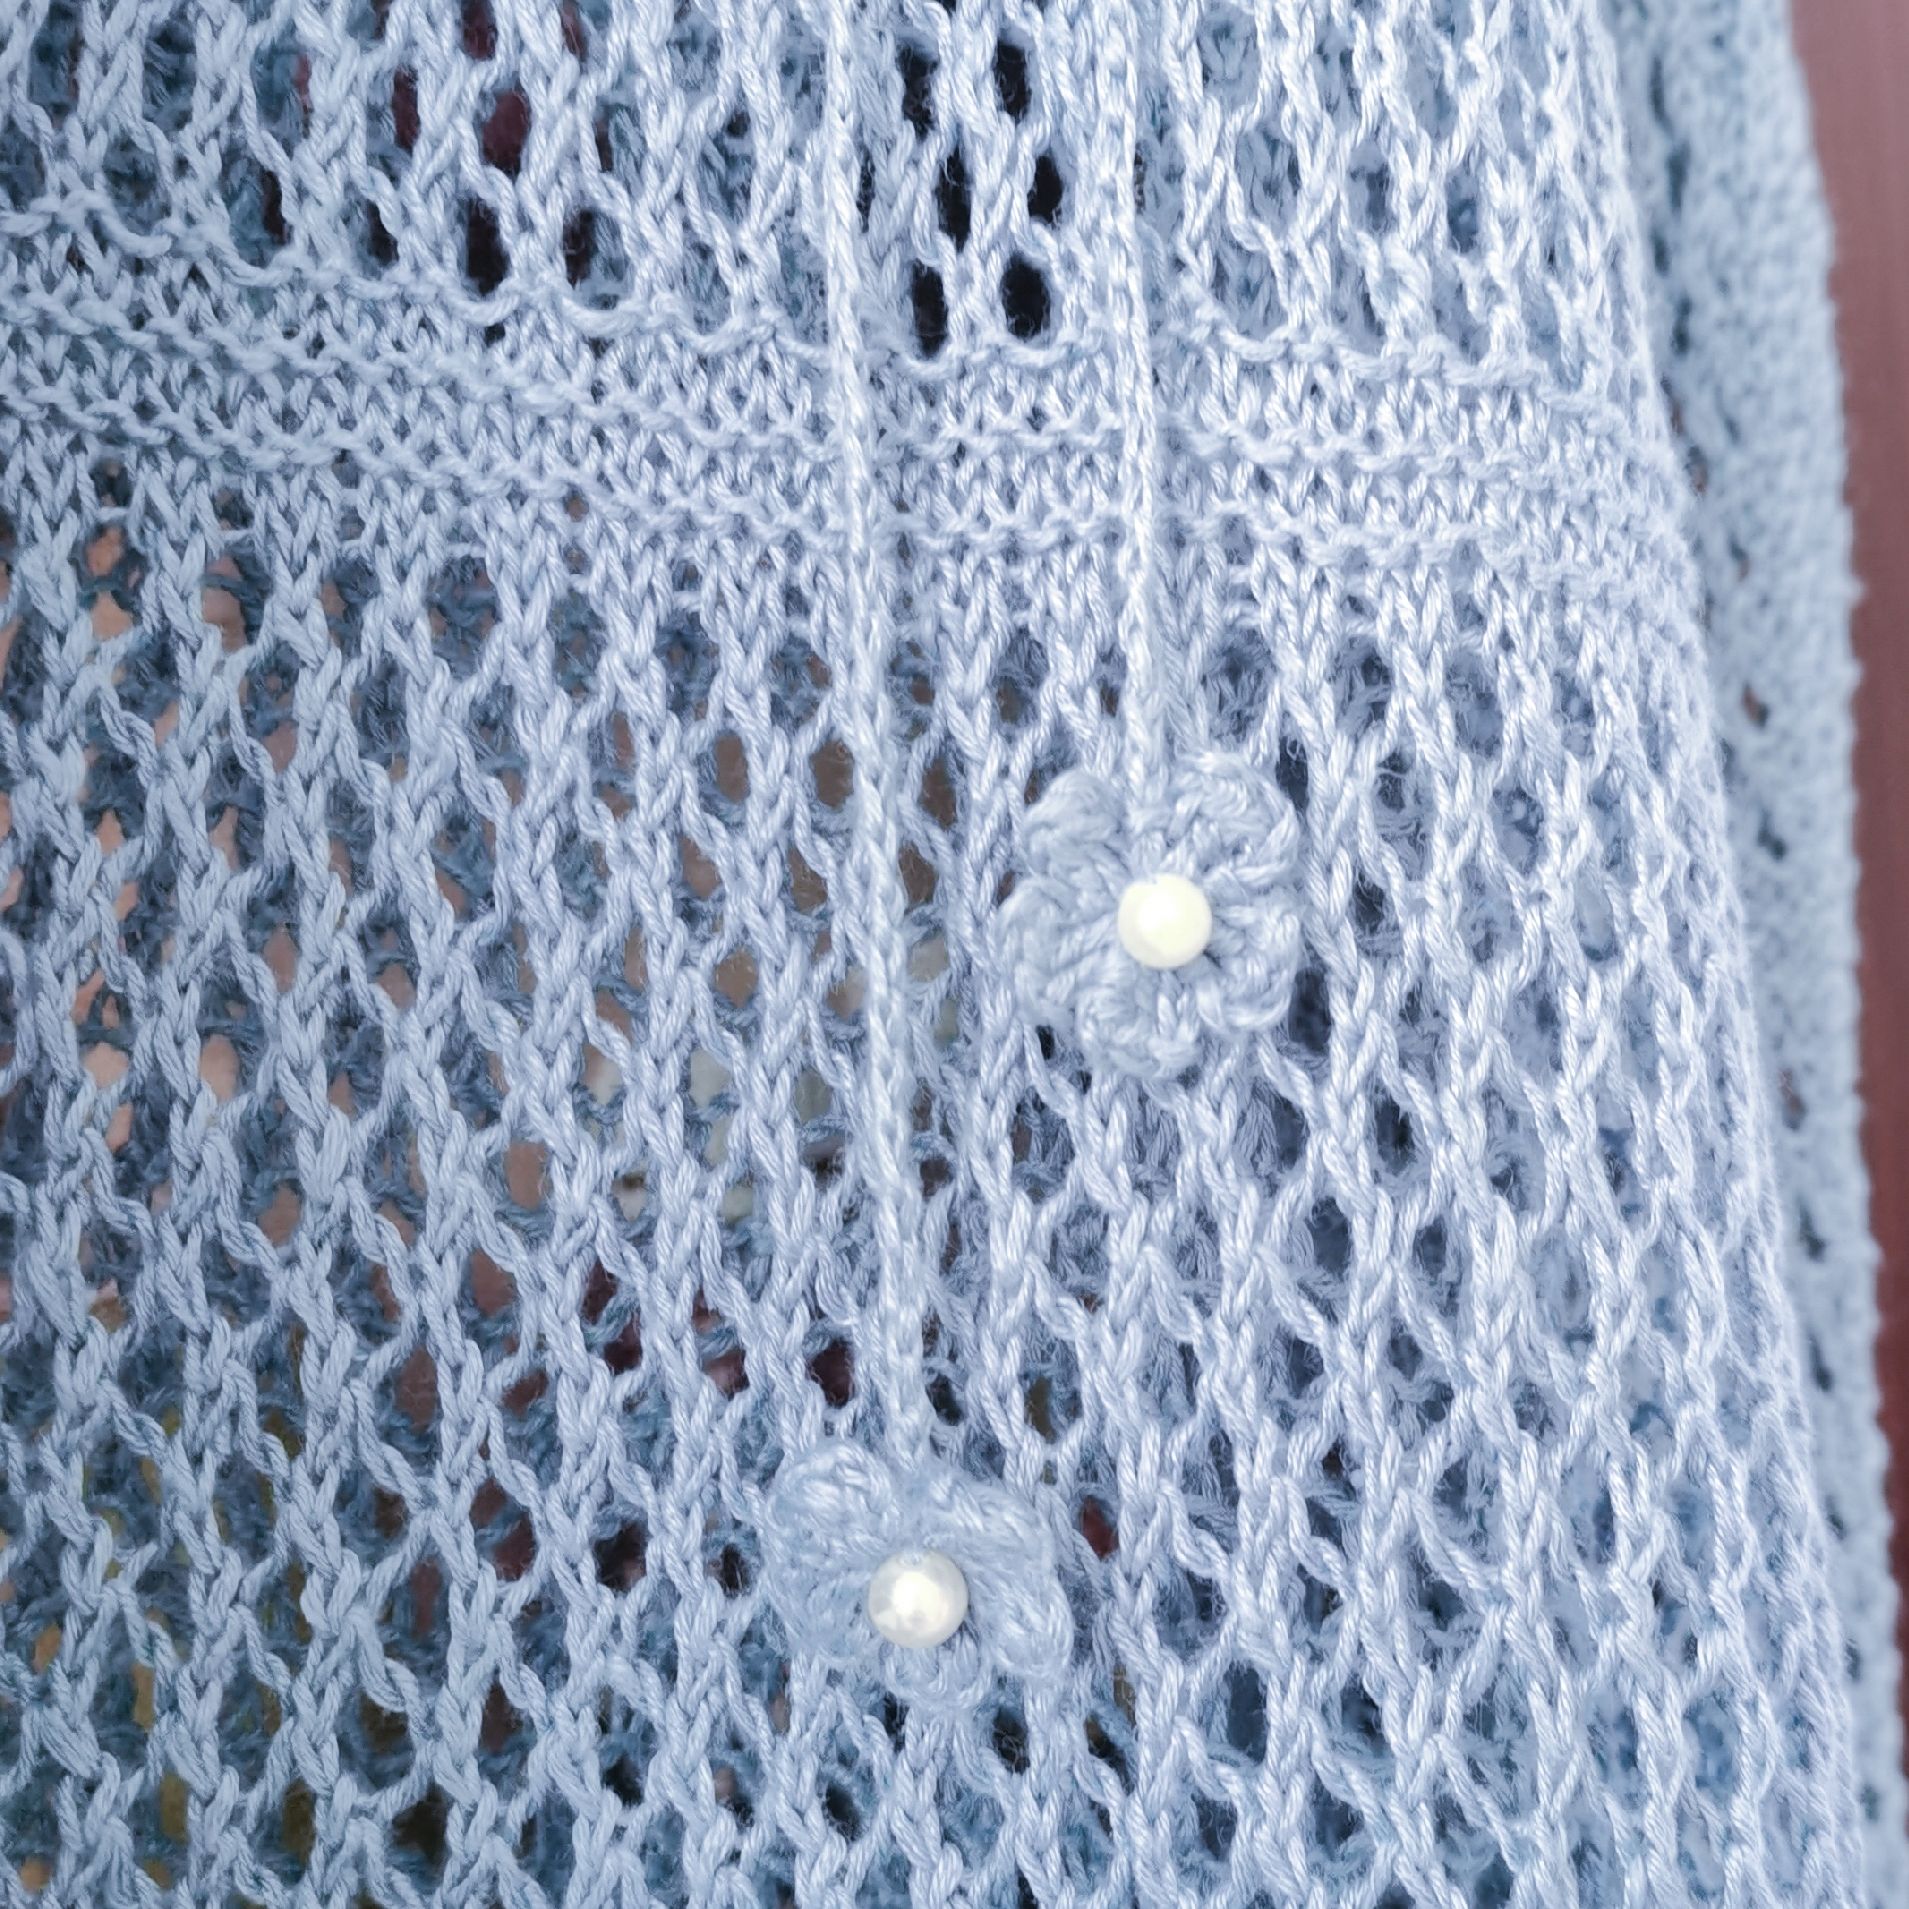 毛衣编织鱼网针织法图片